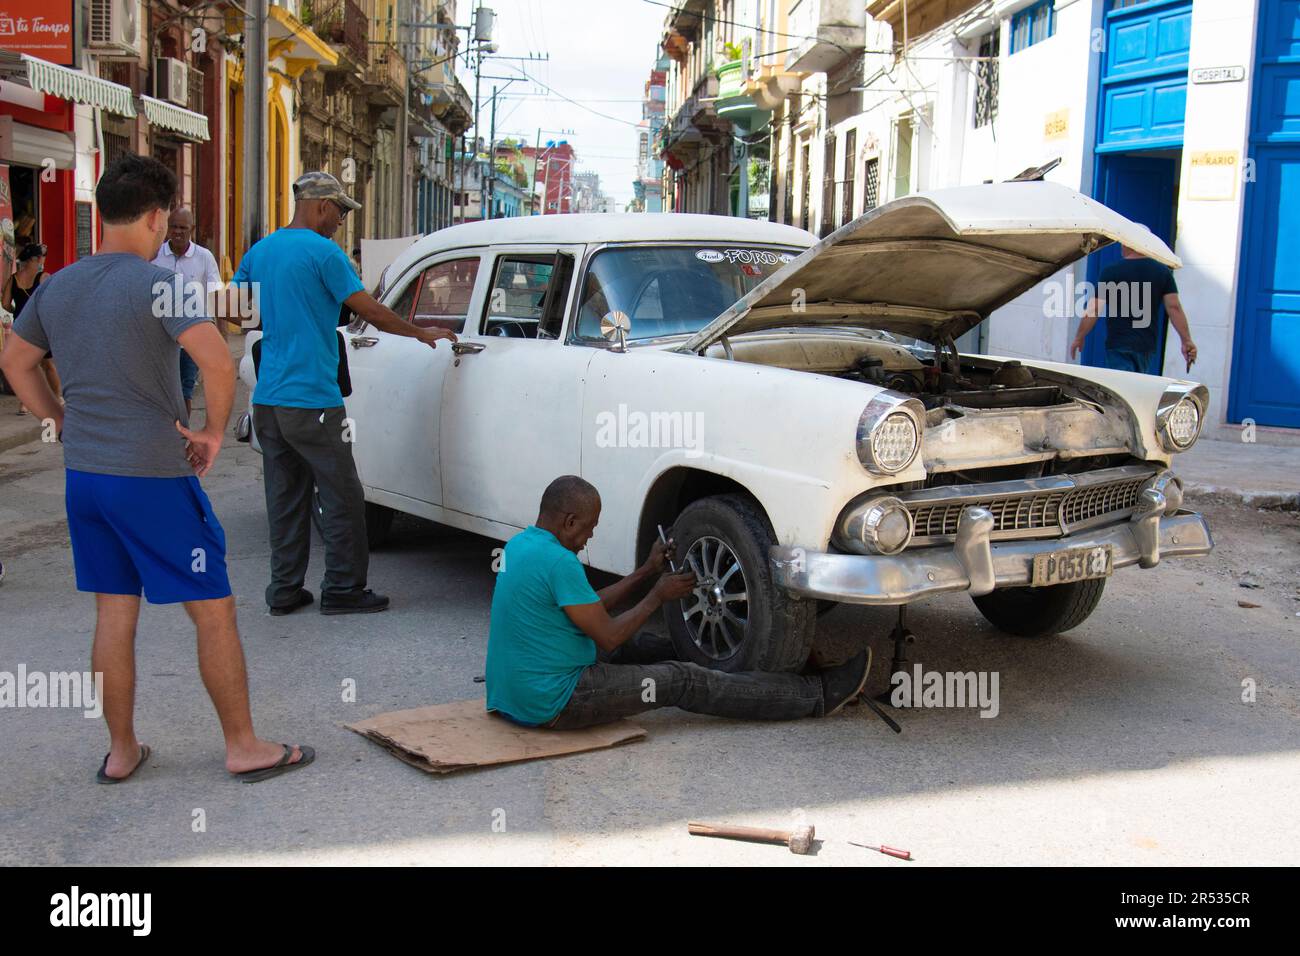 L'uomo cubano fissa il pneumatico sulla sua auto a l'Avana, Cuba, mentre altre persone si fermano, guardano e parlano. Vita a Cuba. Foto Stock